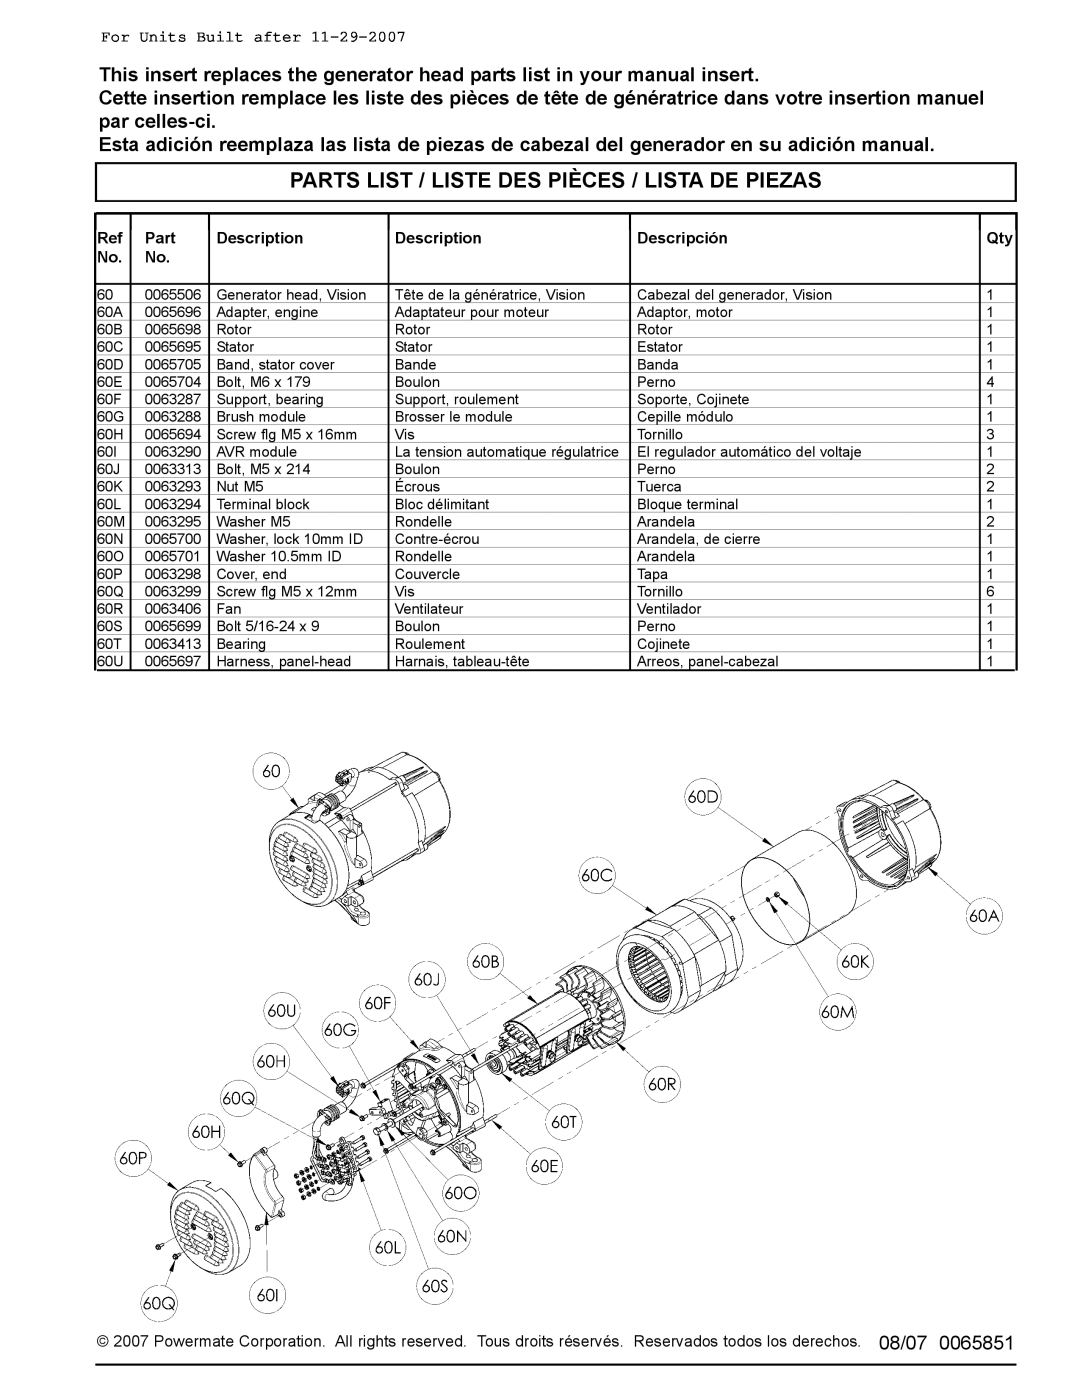 Coleman PM0435005 manual Parts List / Liste Des Pièces / Lista De Piezas, For Units Built after 